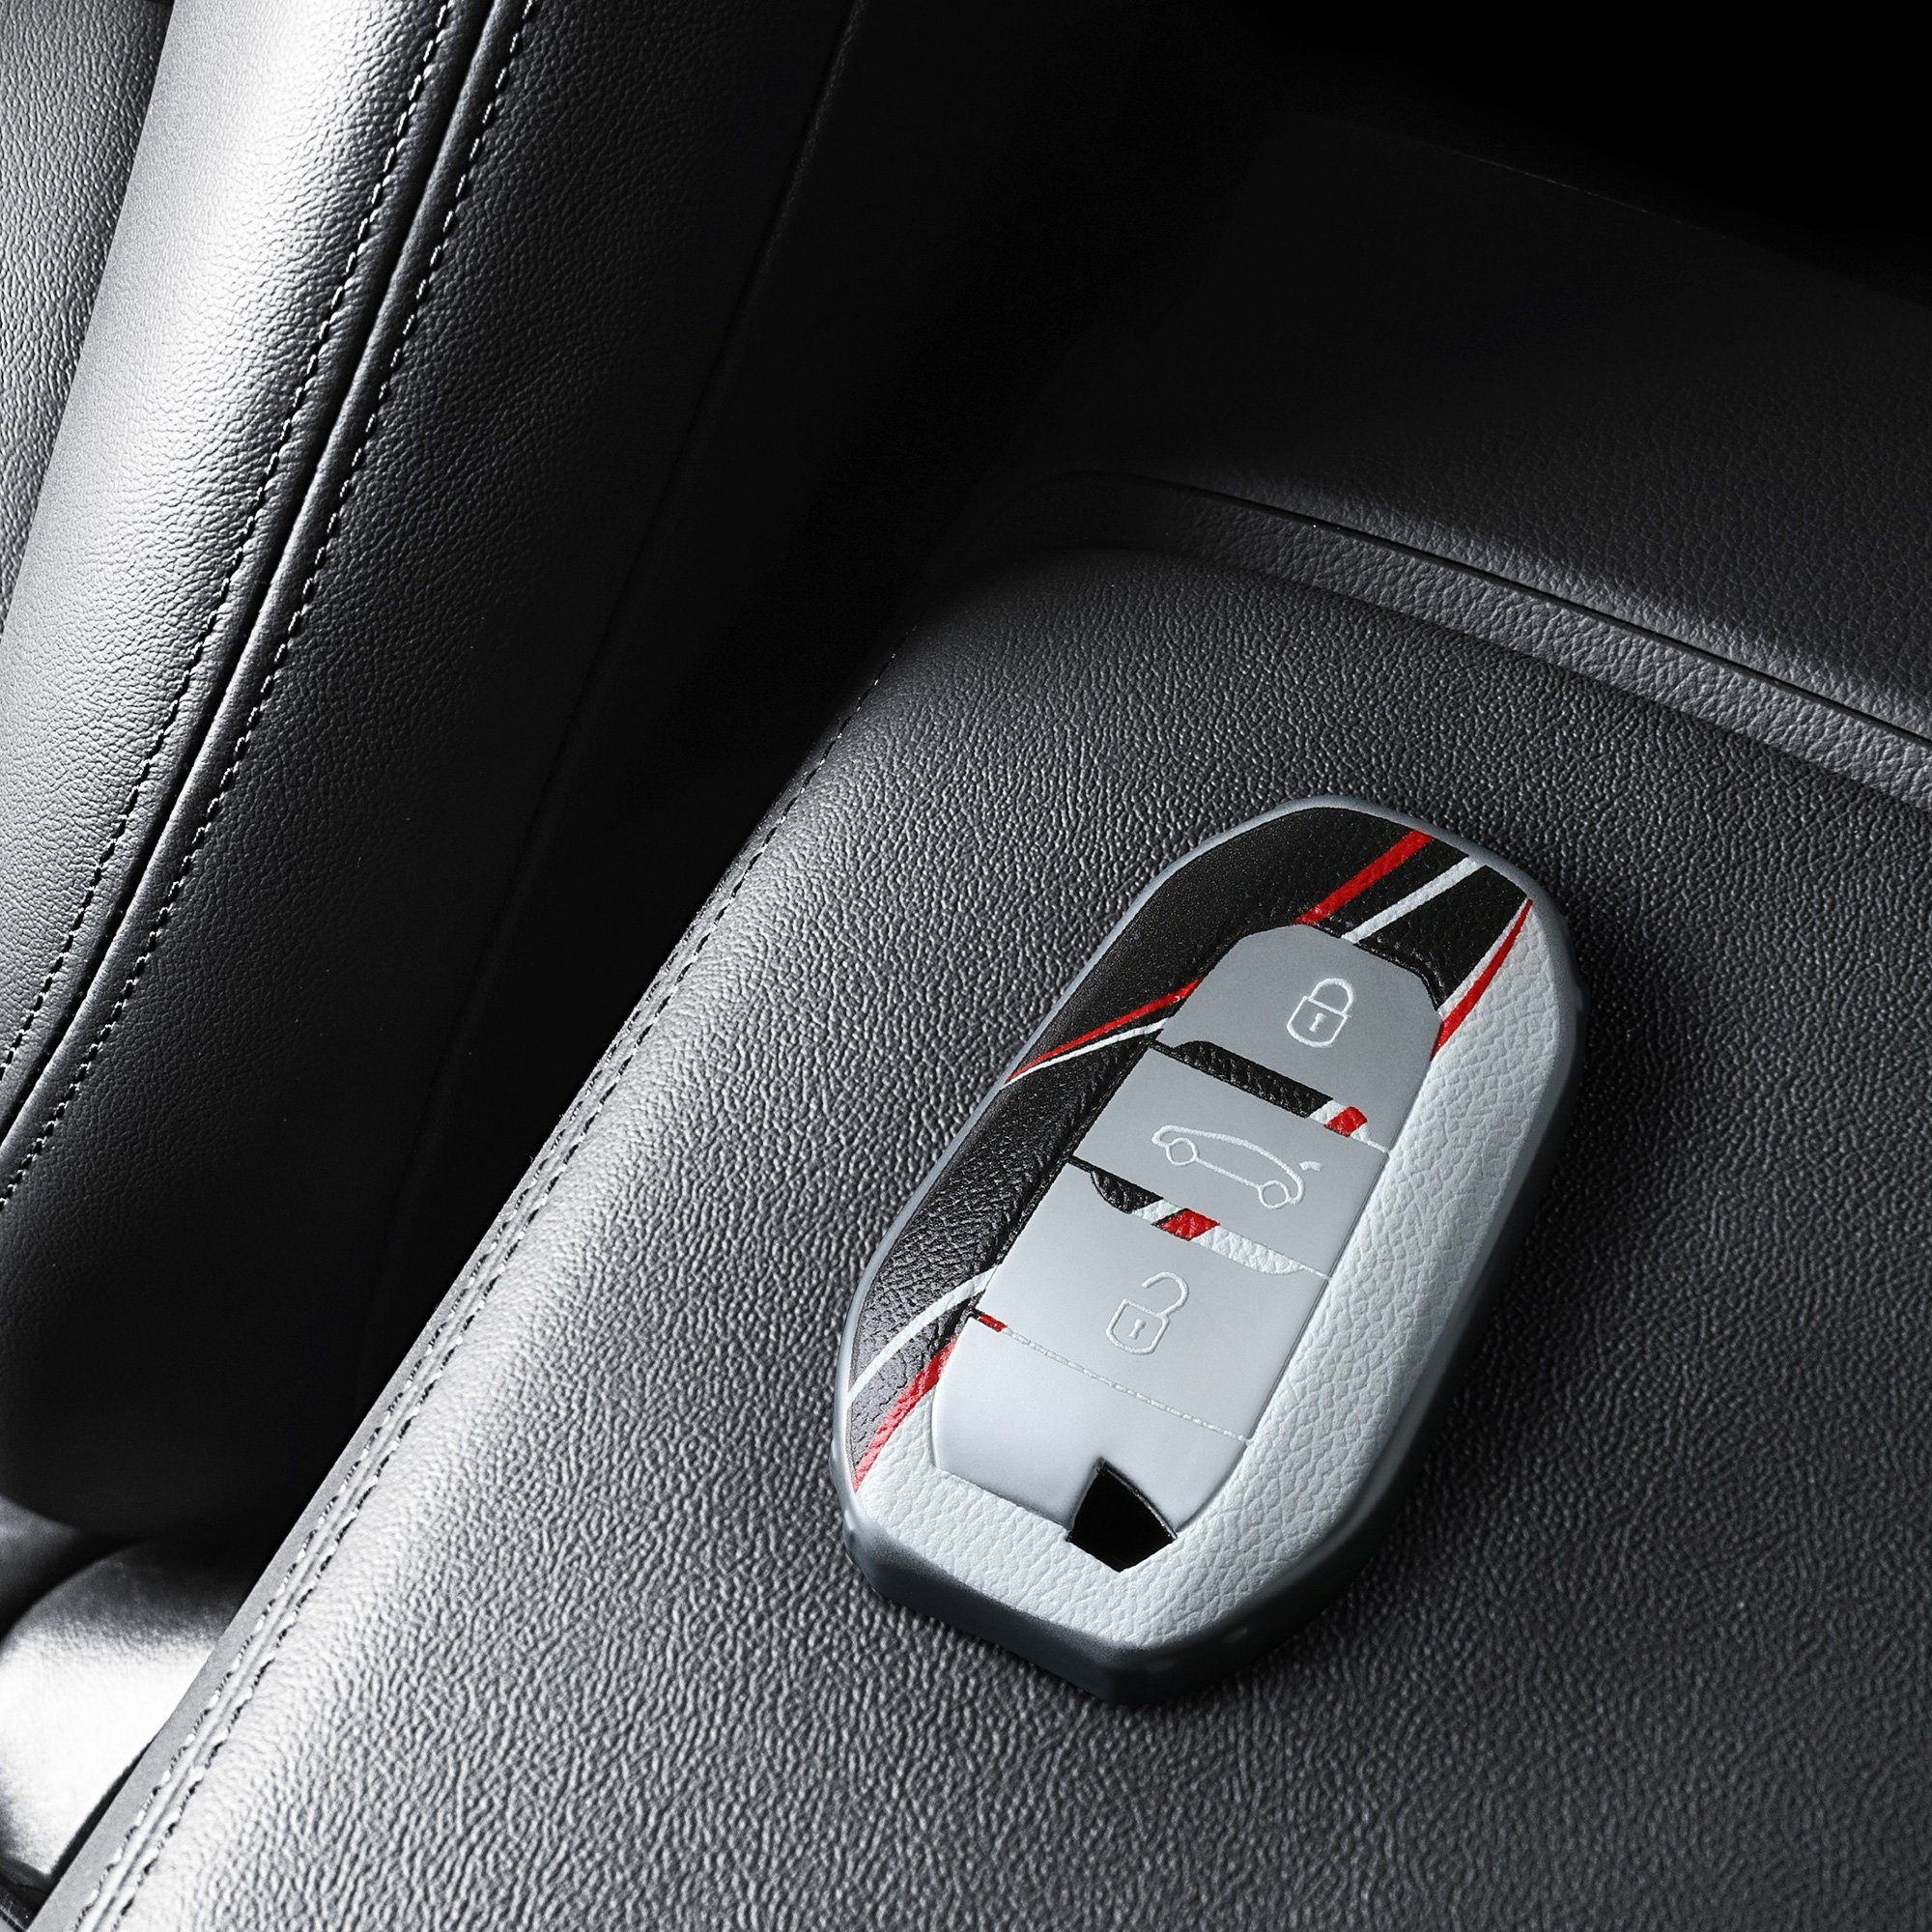 für Citroen, TPU Cover Schlüsseltasche Schlüsselhülle Autoschlüssel Rot Peugeot kwmobile Hülle Schutzhülle